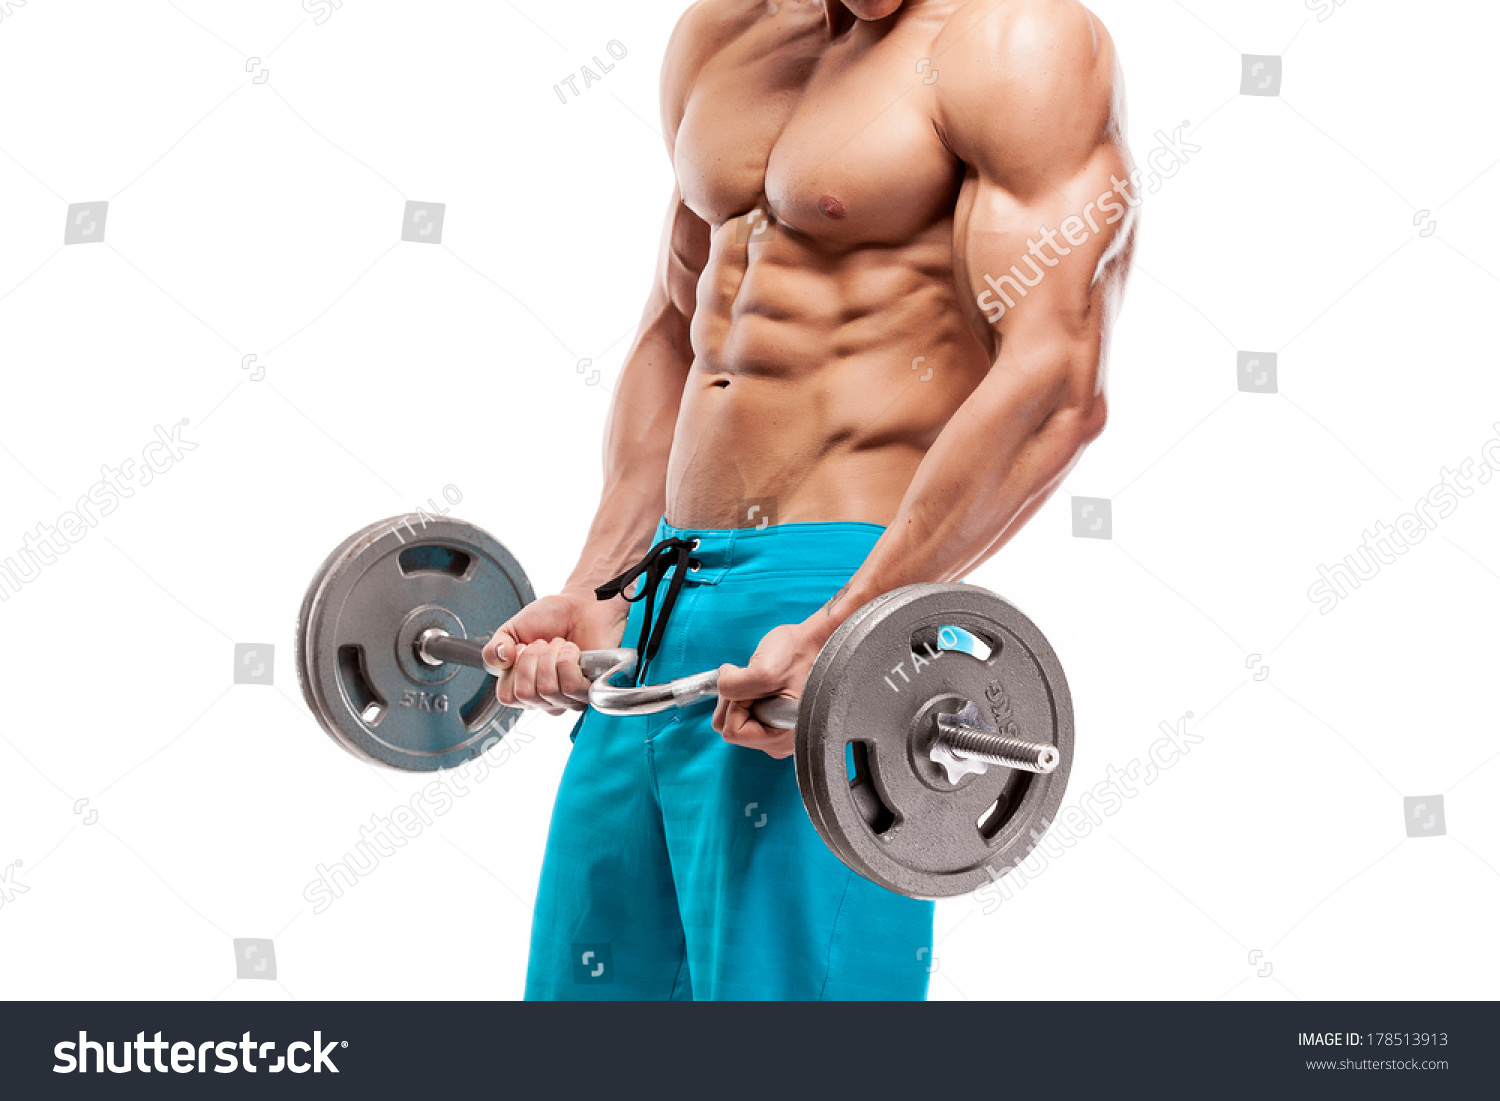 http://image.shutterstock.com/z/stock-photo-muscular-bodybuilder-guy-doing-exercises-with-dumbbells-isolated-over-white-background-178513913.jpg